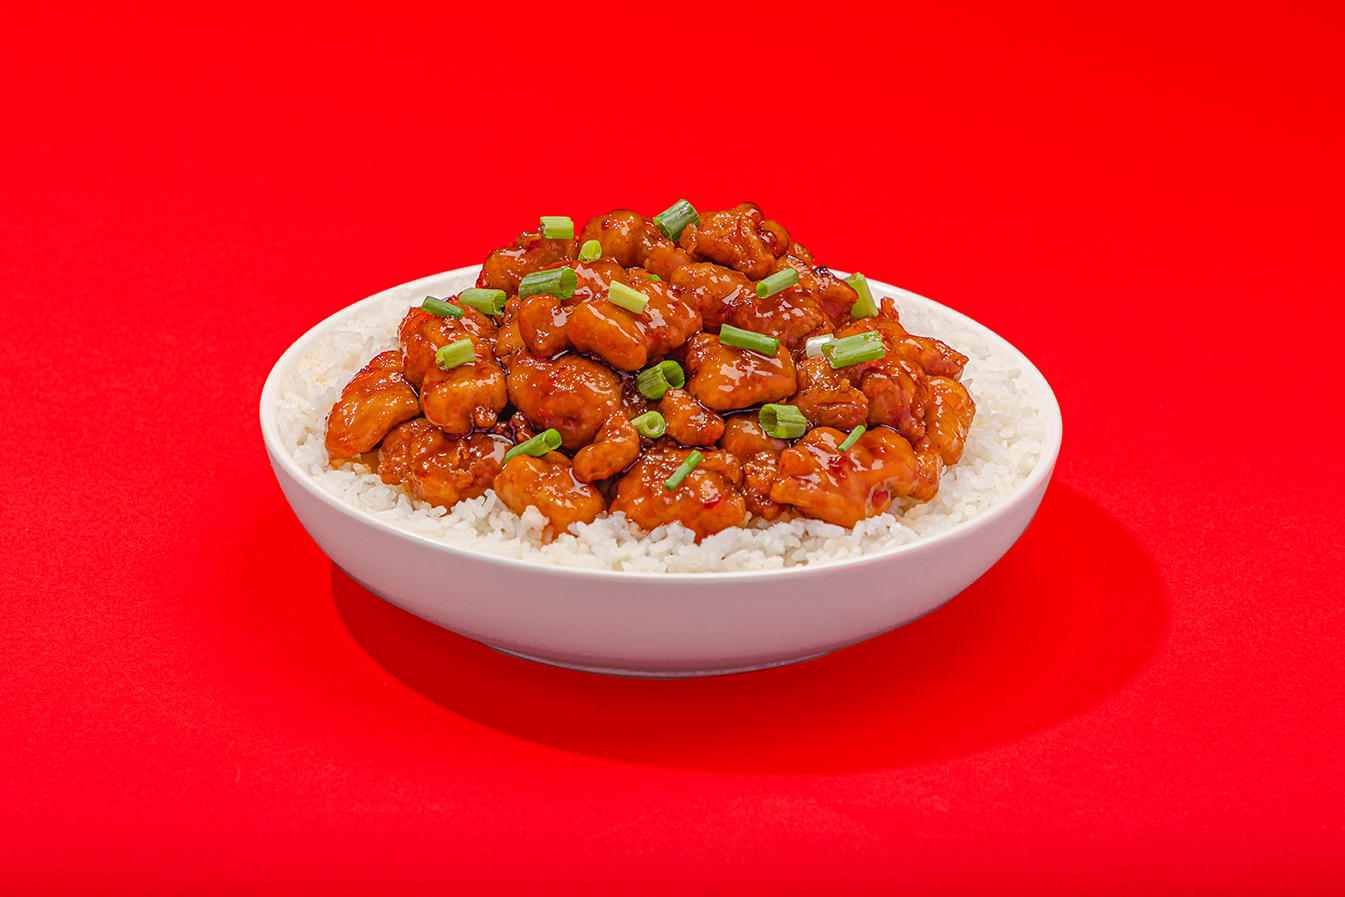 Firecracker Chicken Pei Wei Asian Kitchen Dallas (214)965-0007